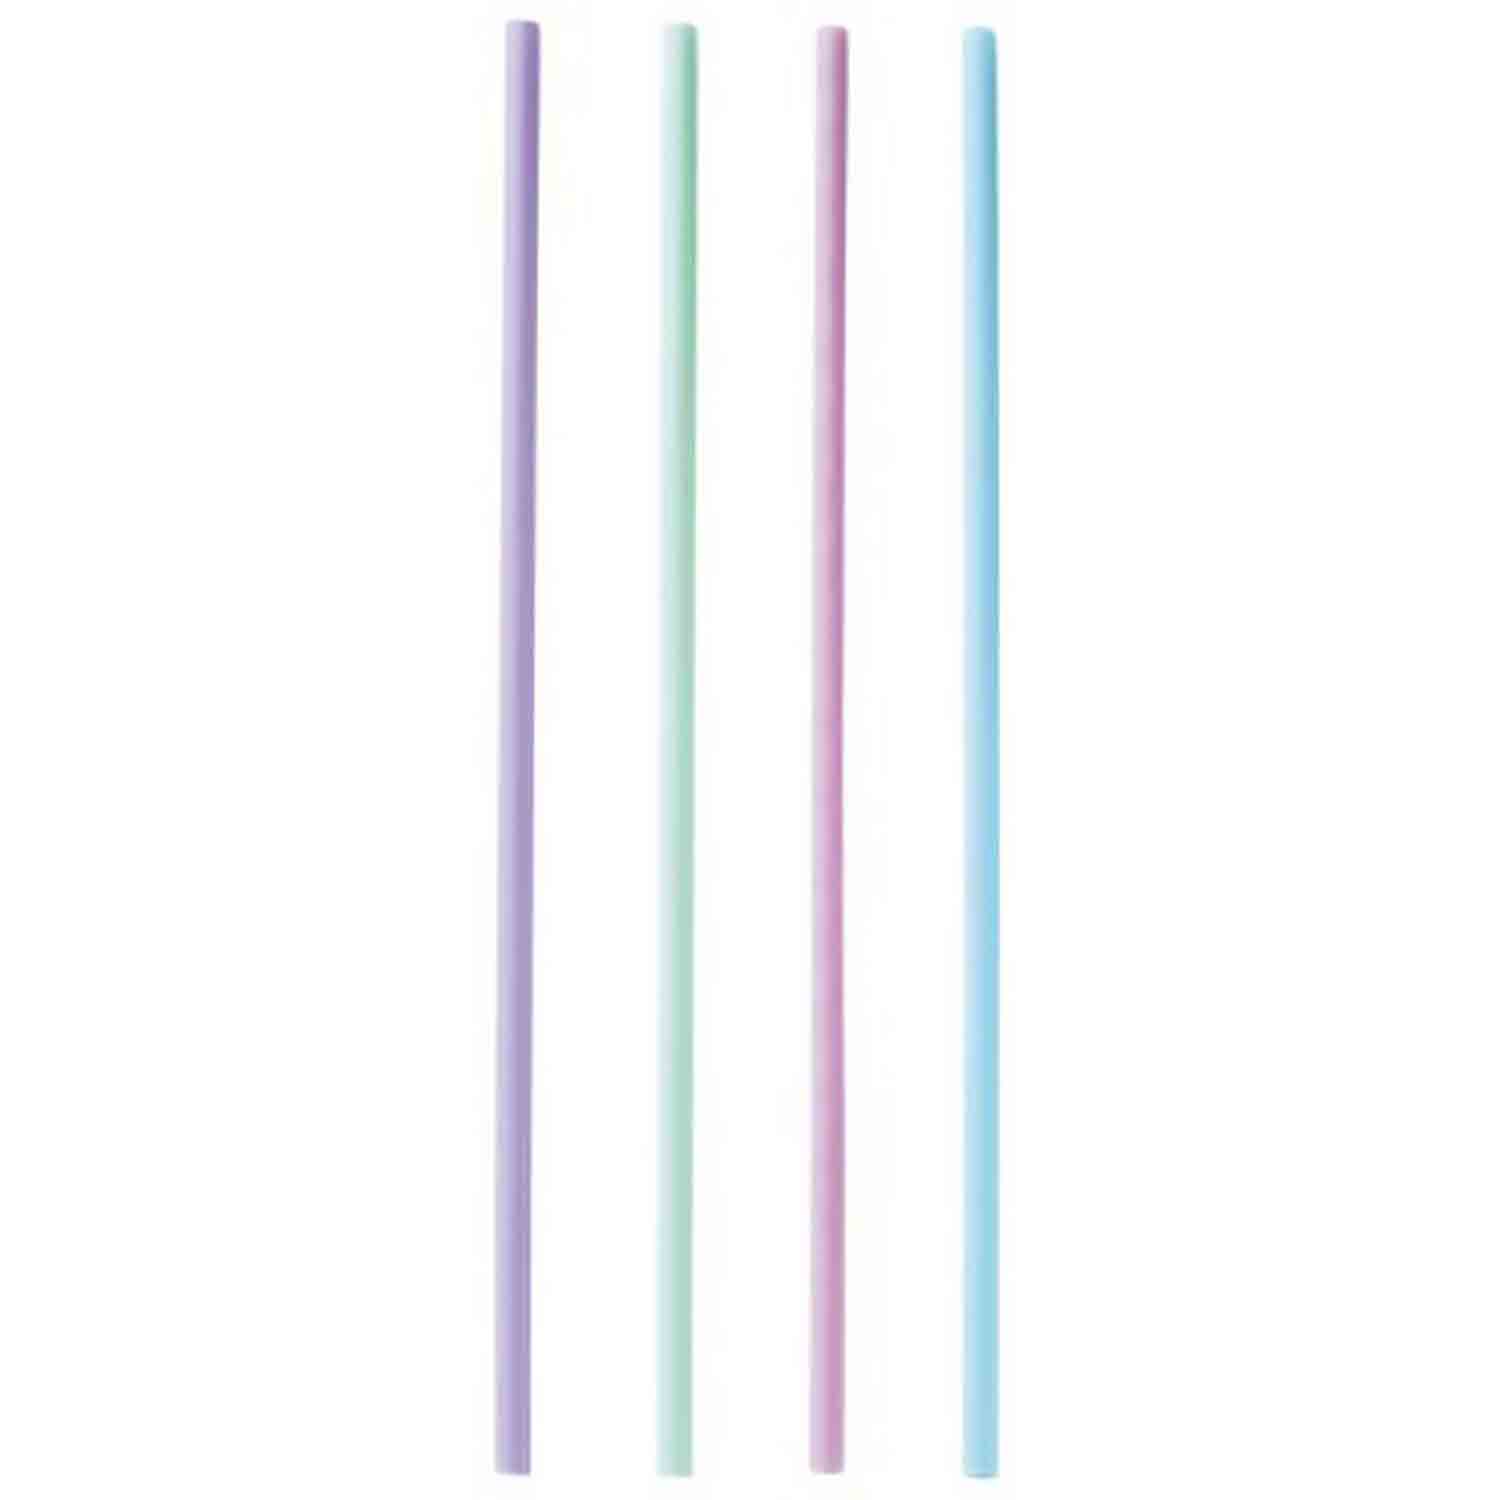 Plastic Sucker Sticks - Pastel